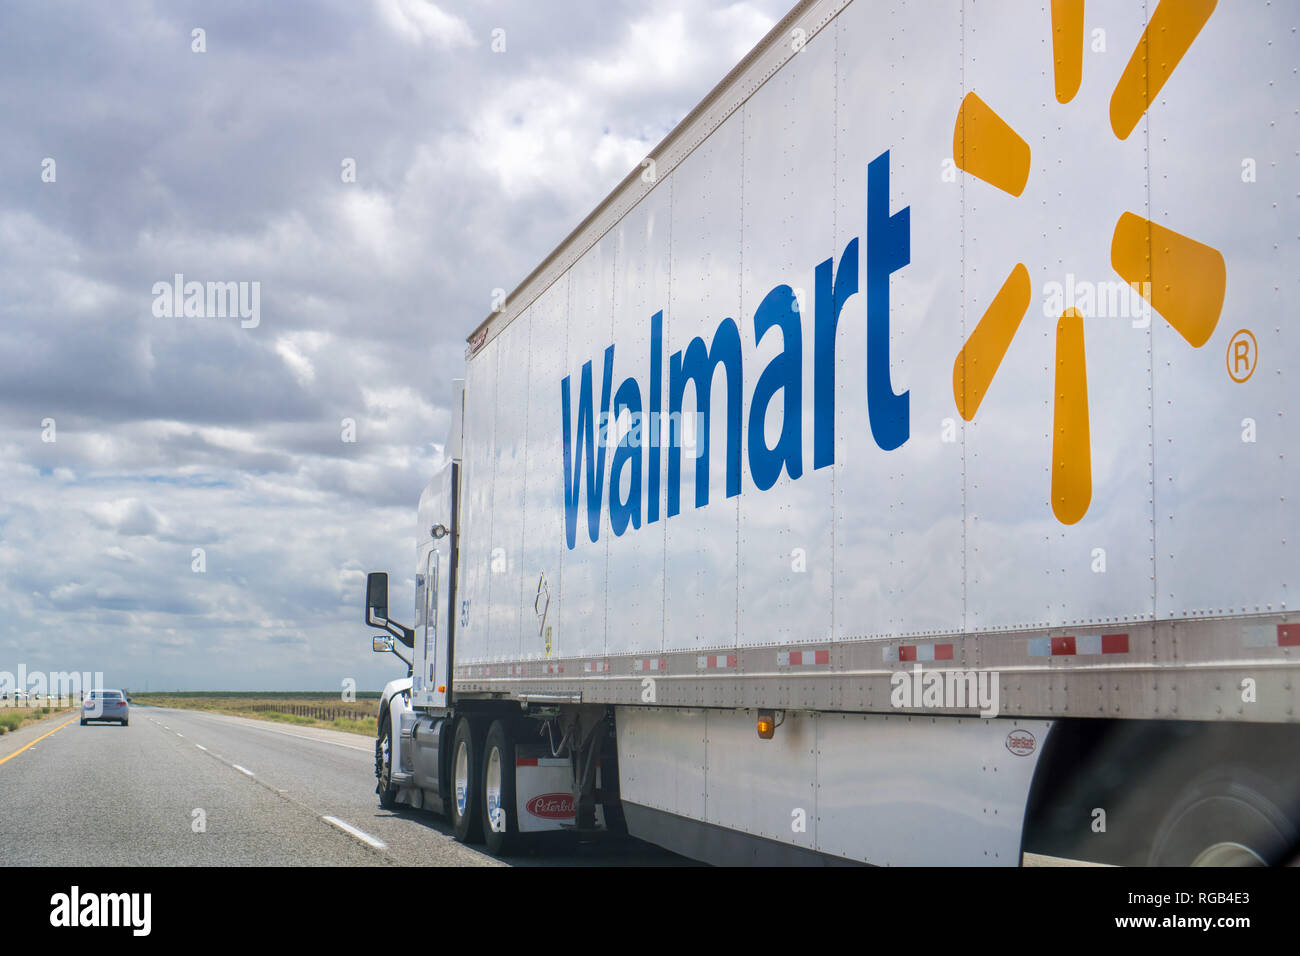 25 mai 2018 Bakersfield / CA / USA - Walmart la conduite de camions sur l'autoroute sur un jour nuageux Banque D'Images